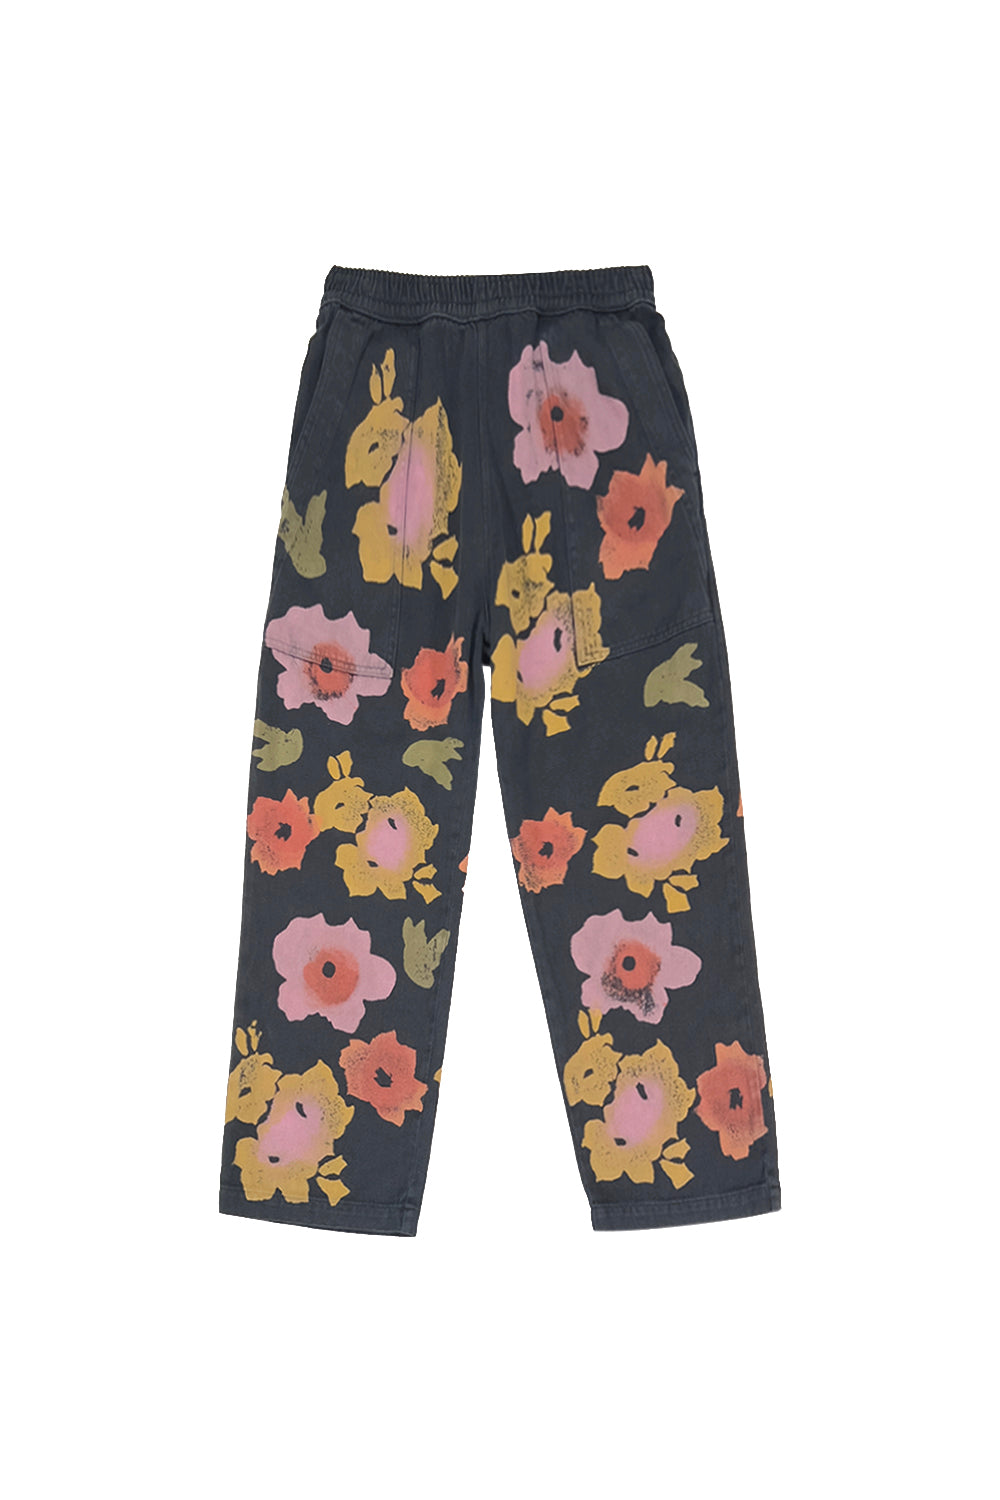 Floral Ocean Pant | Jungmaven Hemp Clothing & Accessories / Color: Black